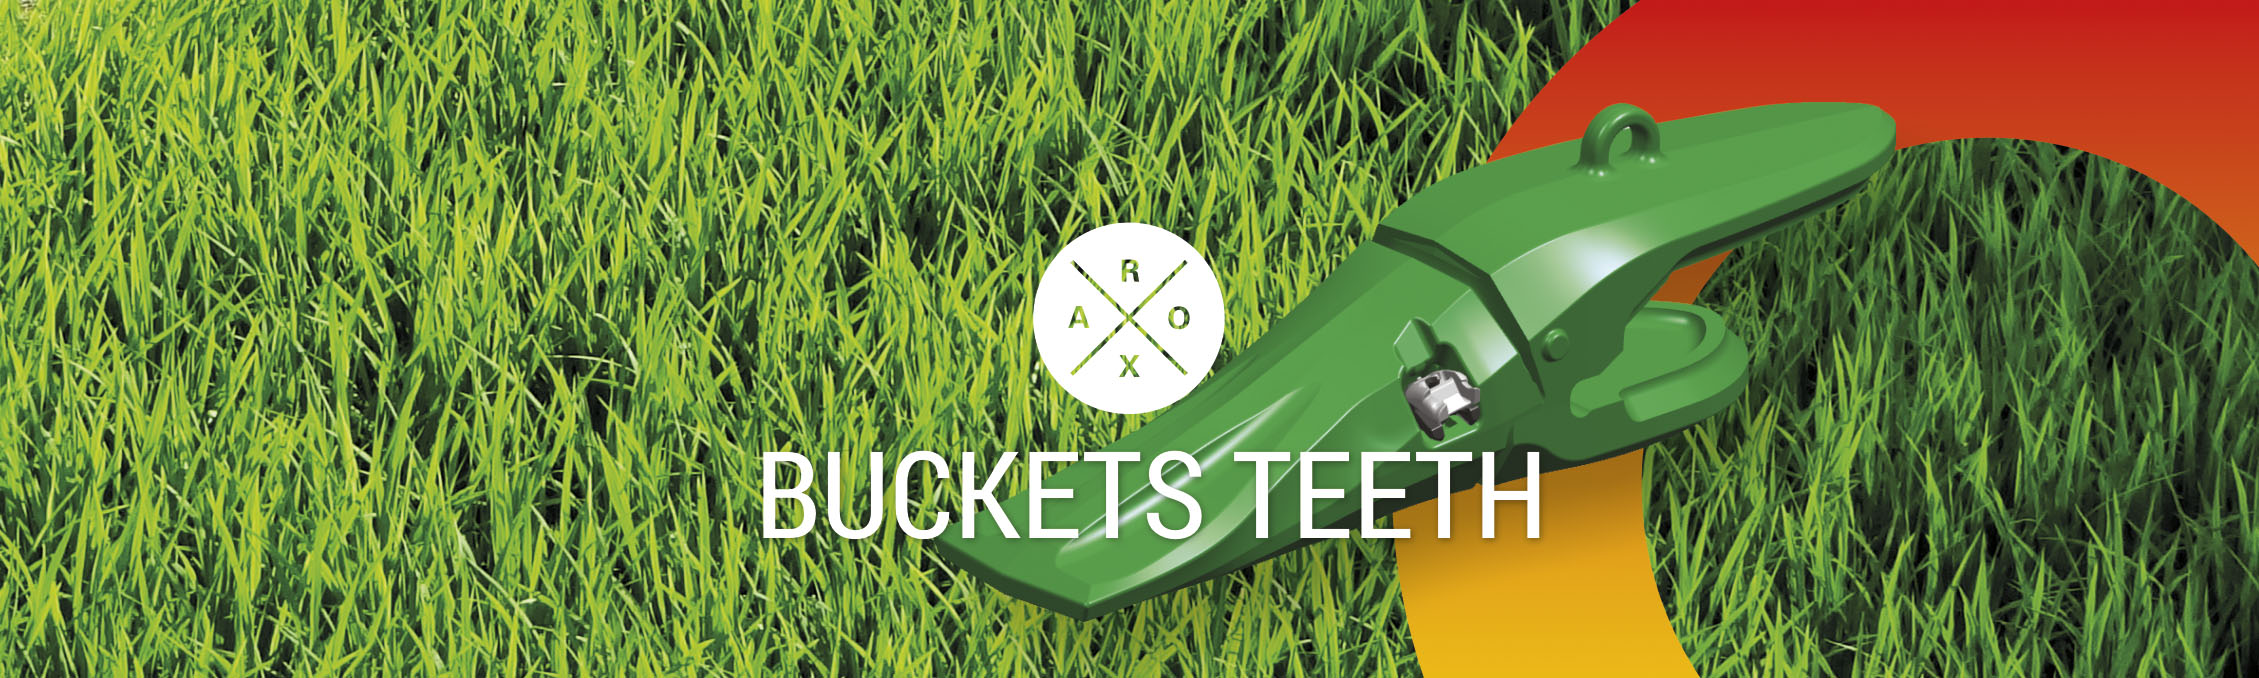 buckets teeth